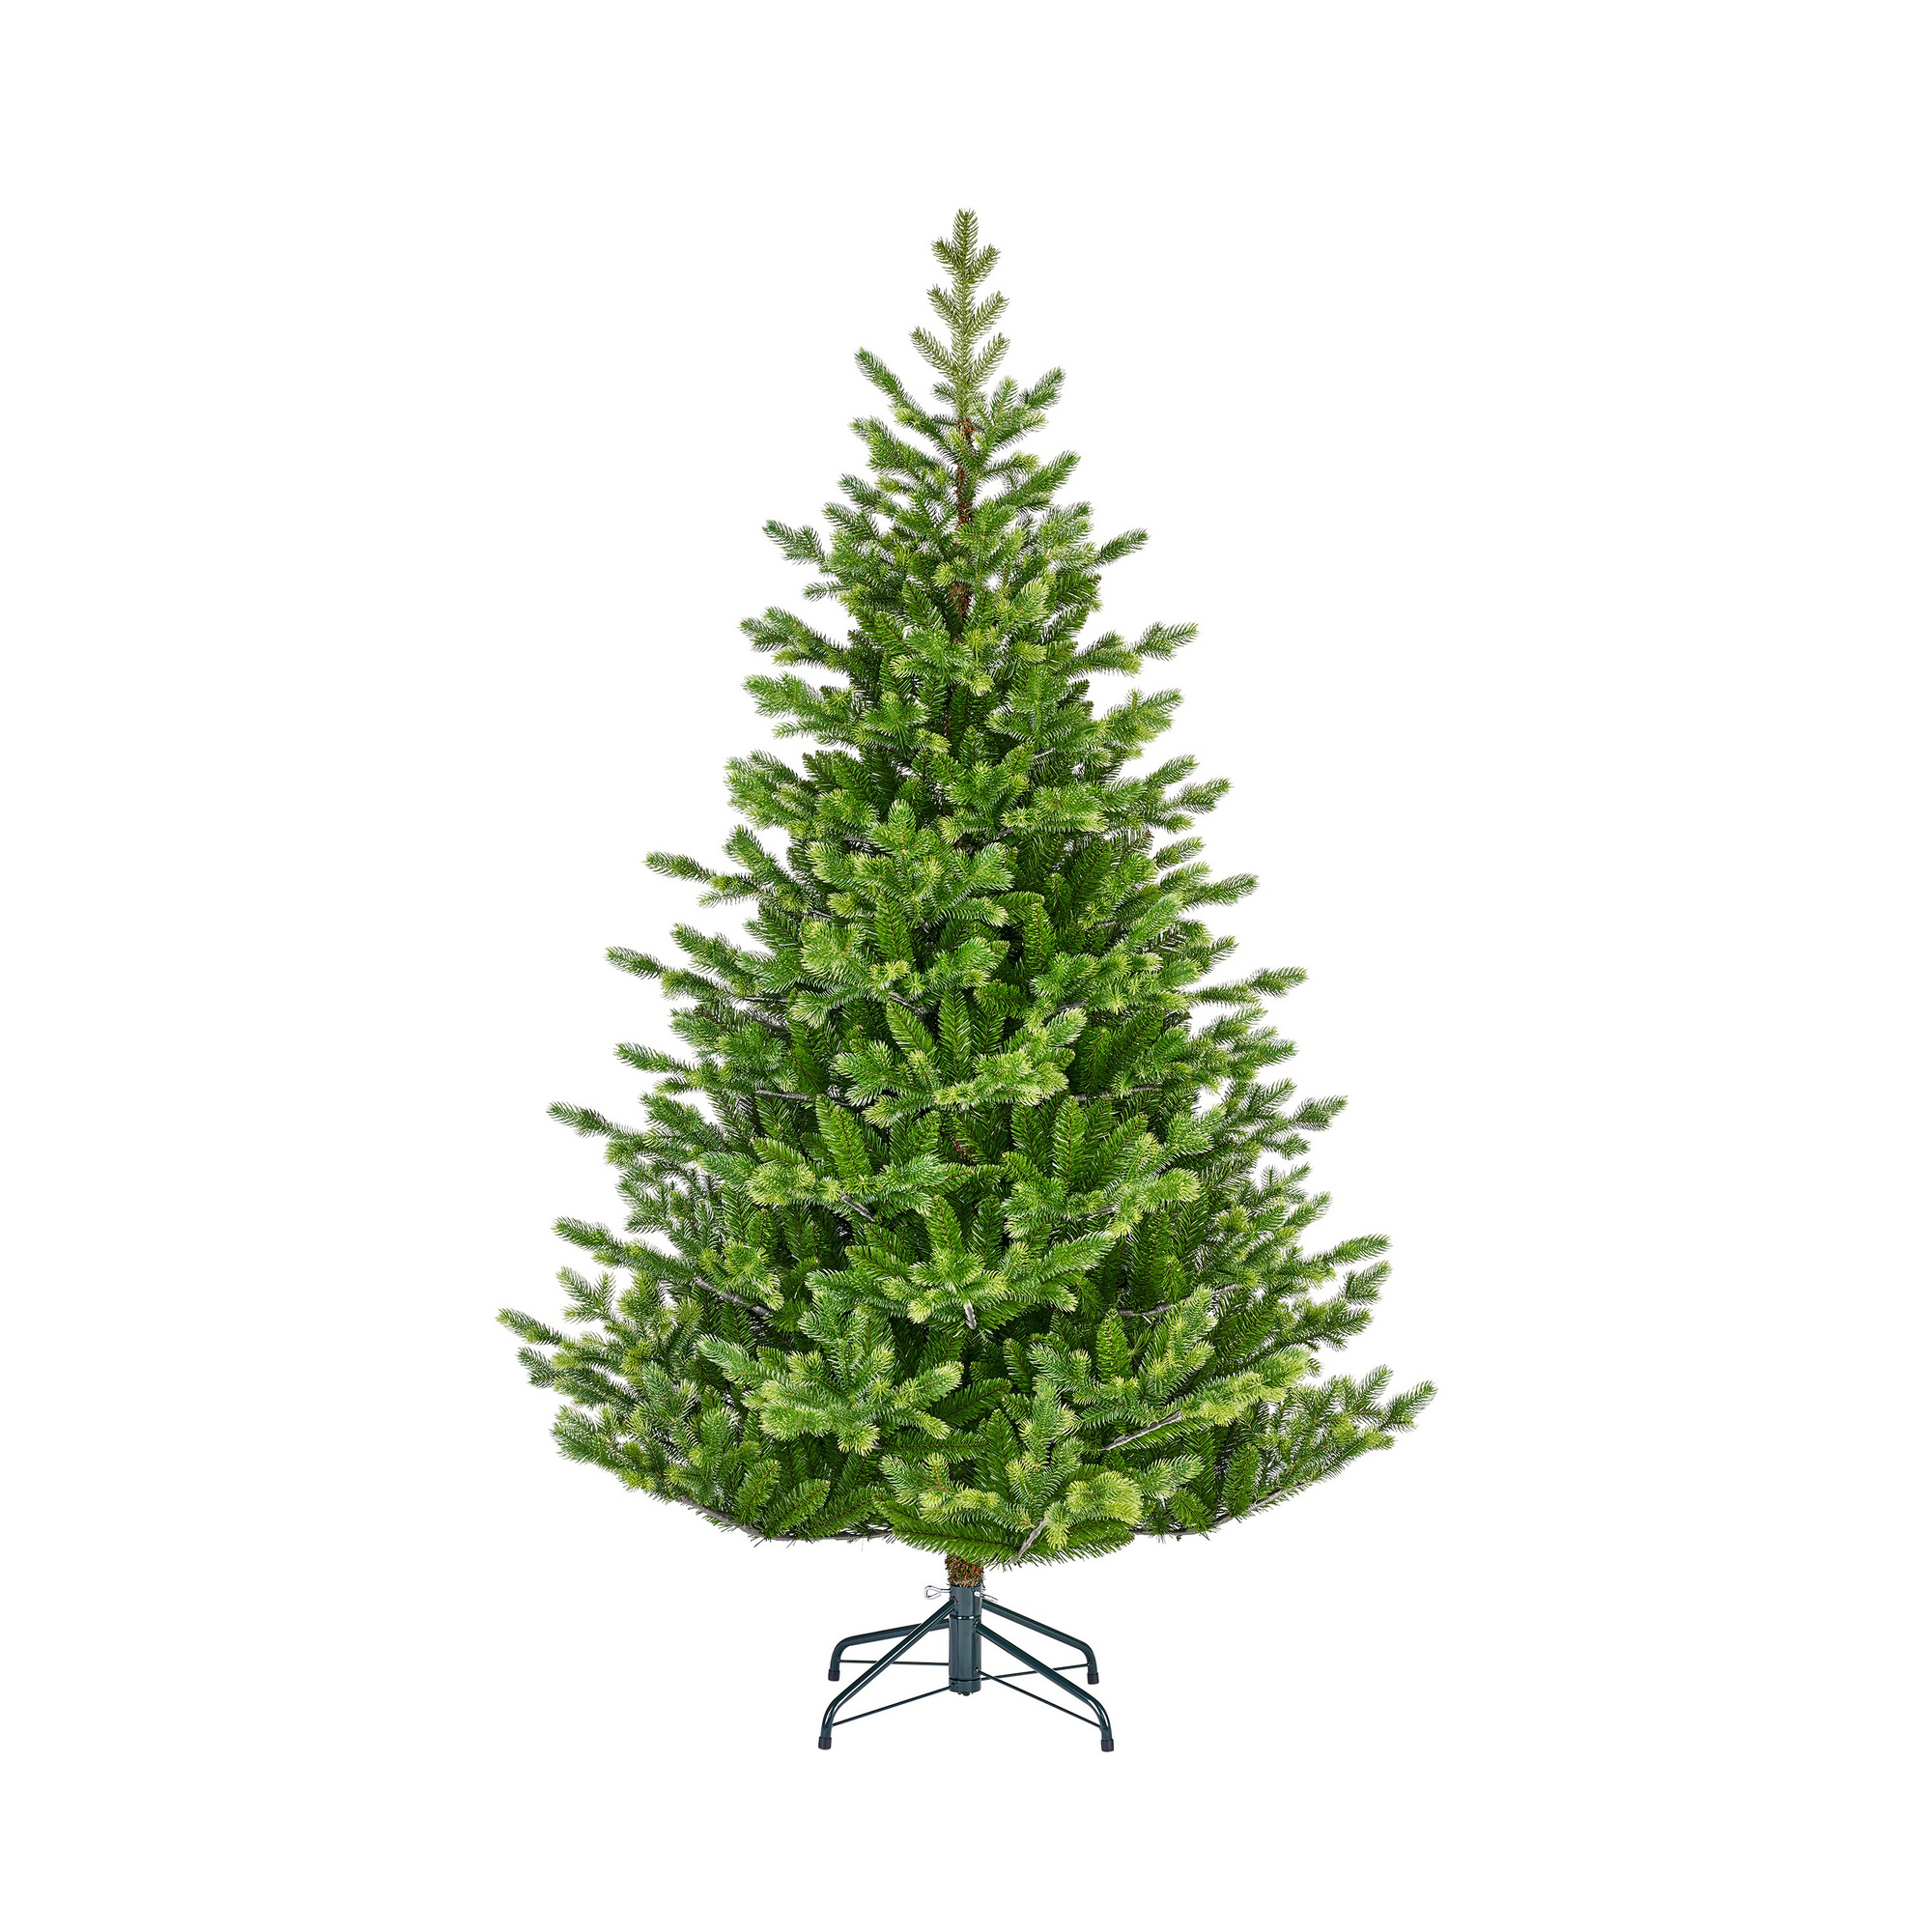 Künstlicher Weihnachtsbaum 'Maclura' grün 185 cm + product picture